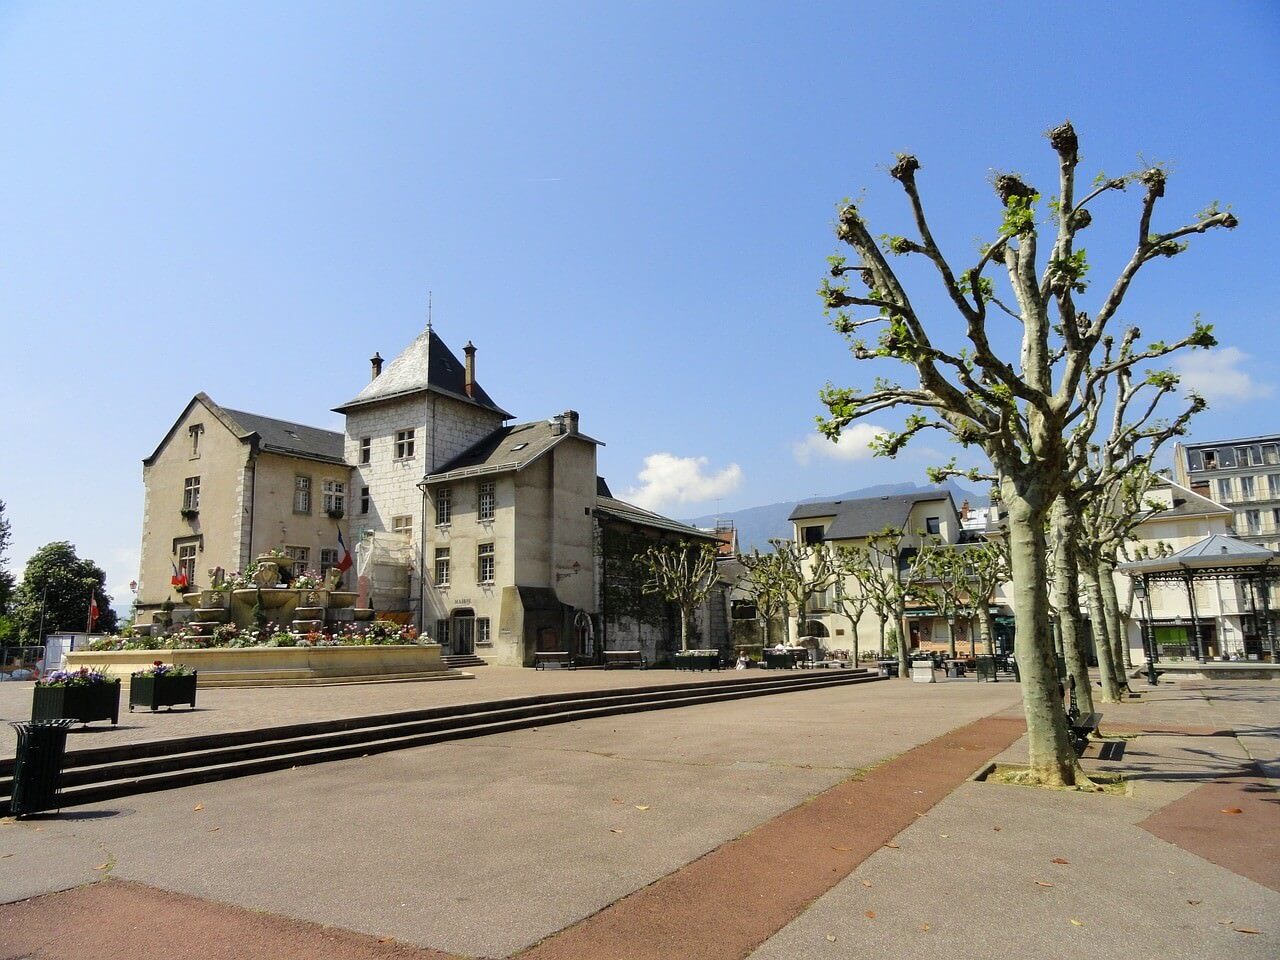 Hôtel de ville d'Aix-les-Bains